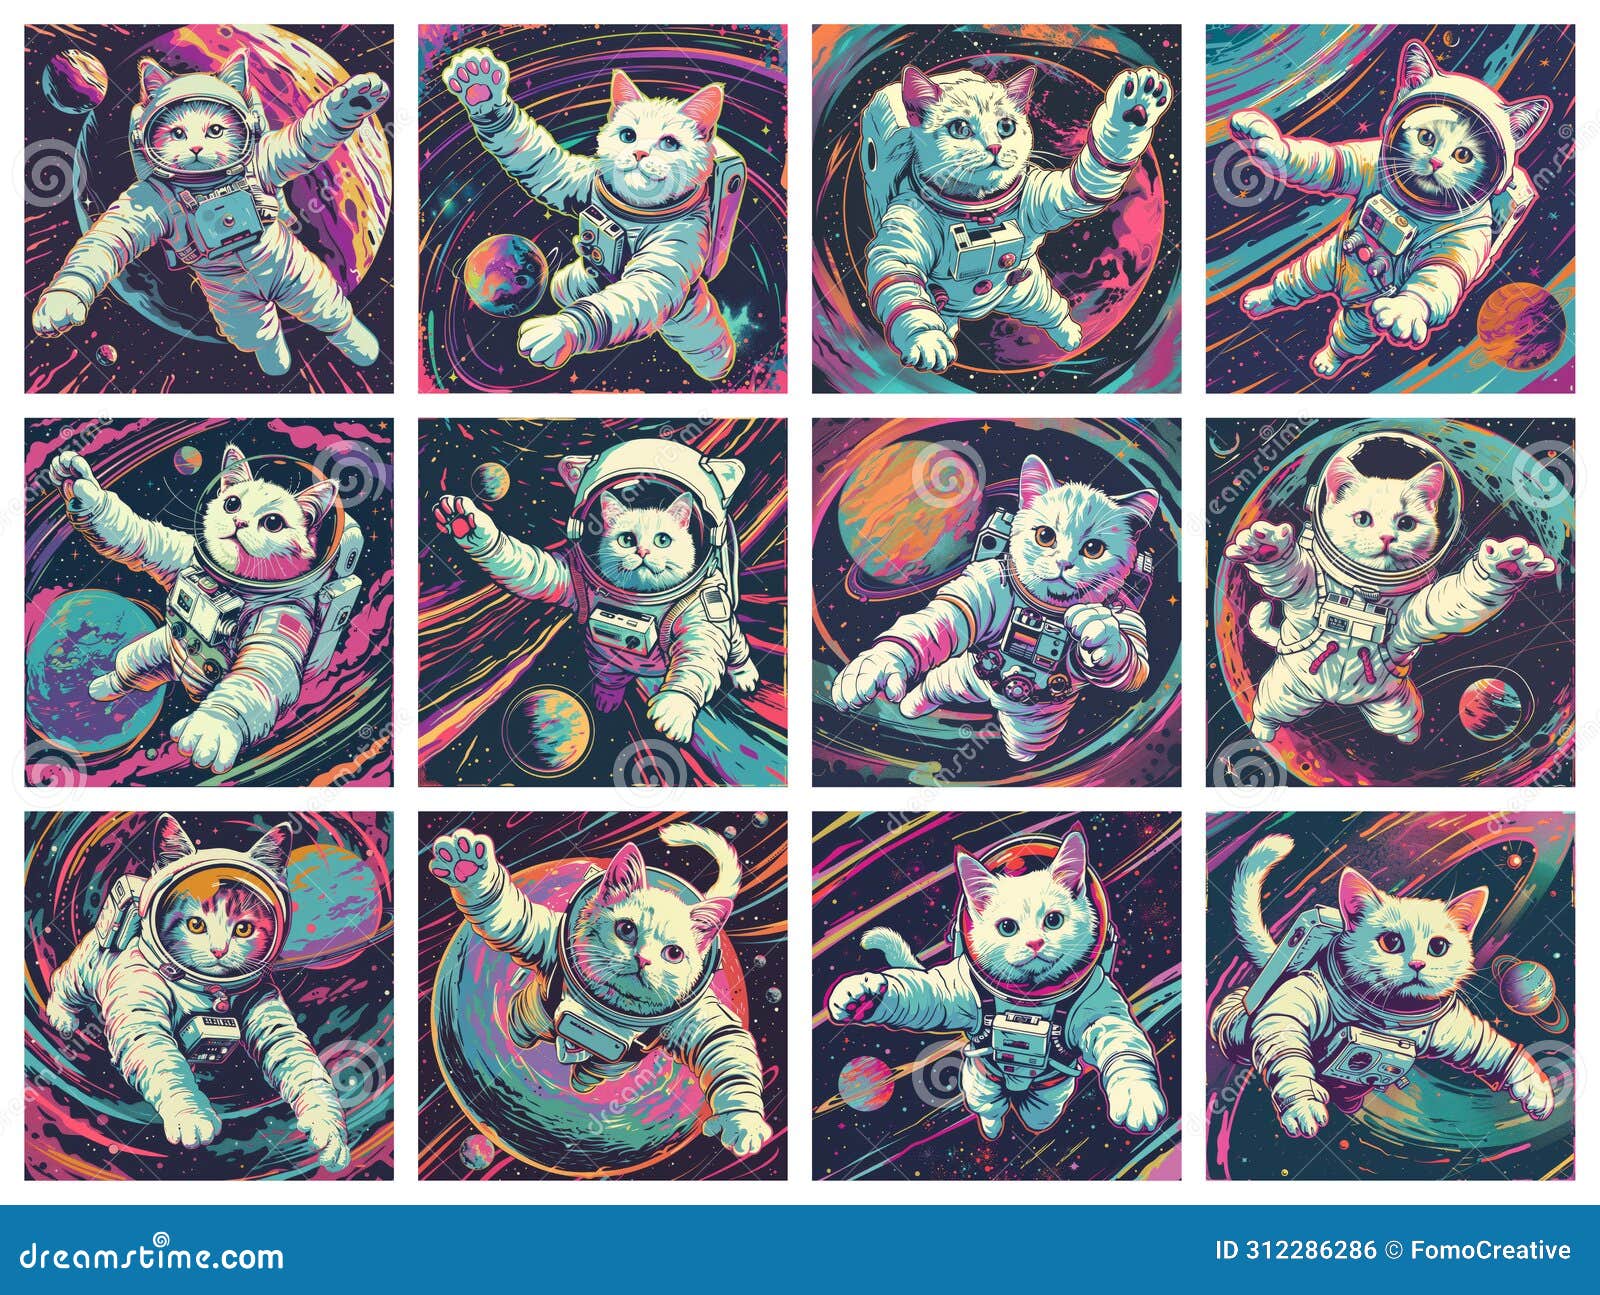 whimsical art depicting felines in space adventures